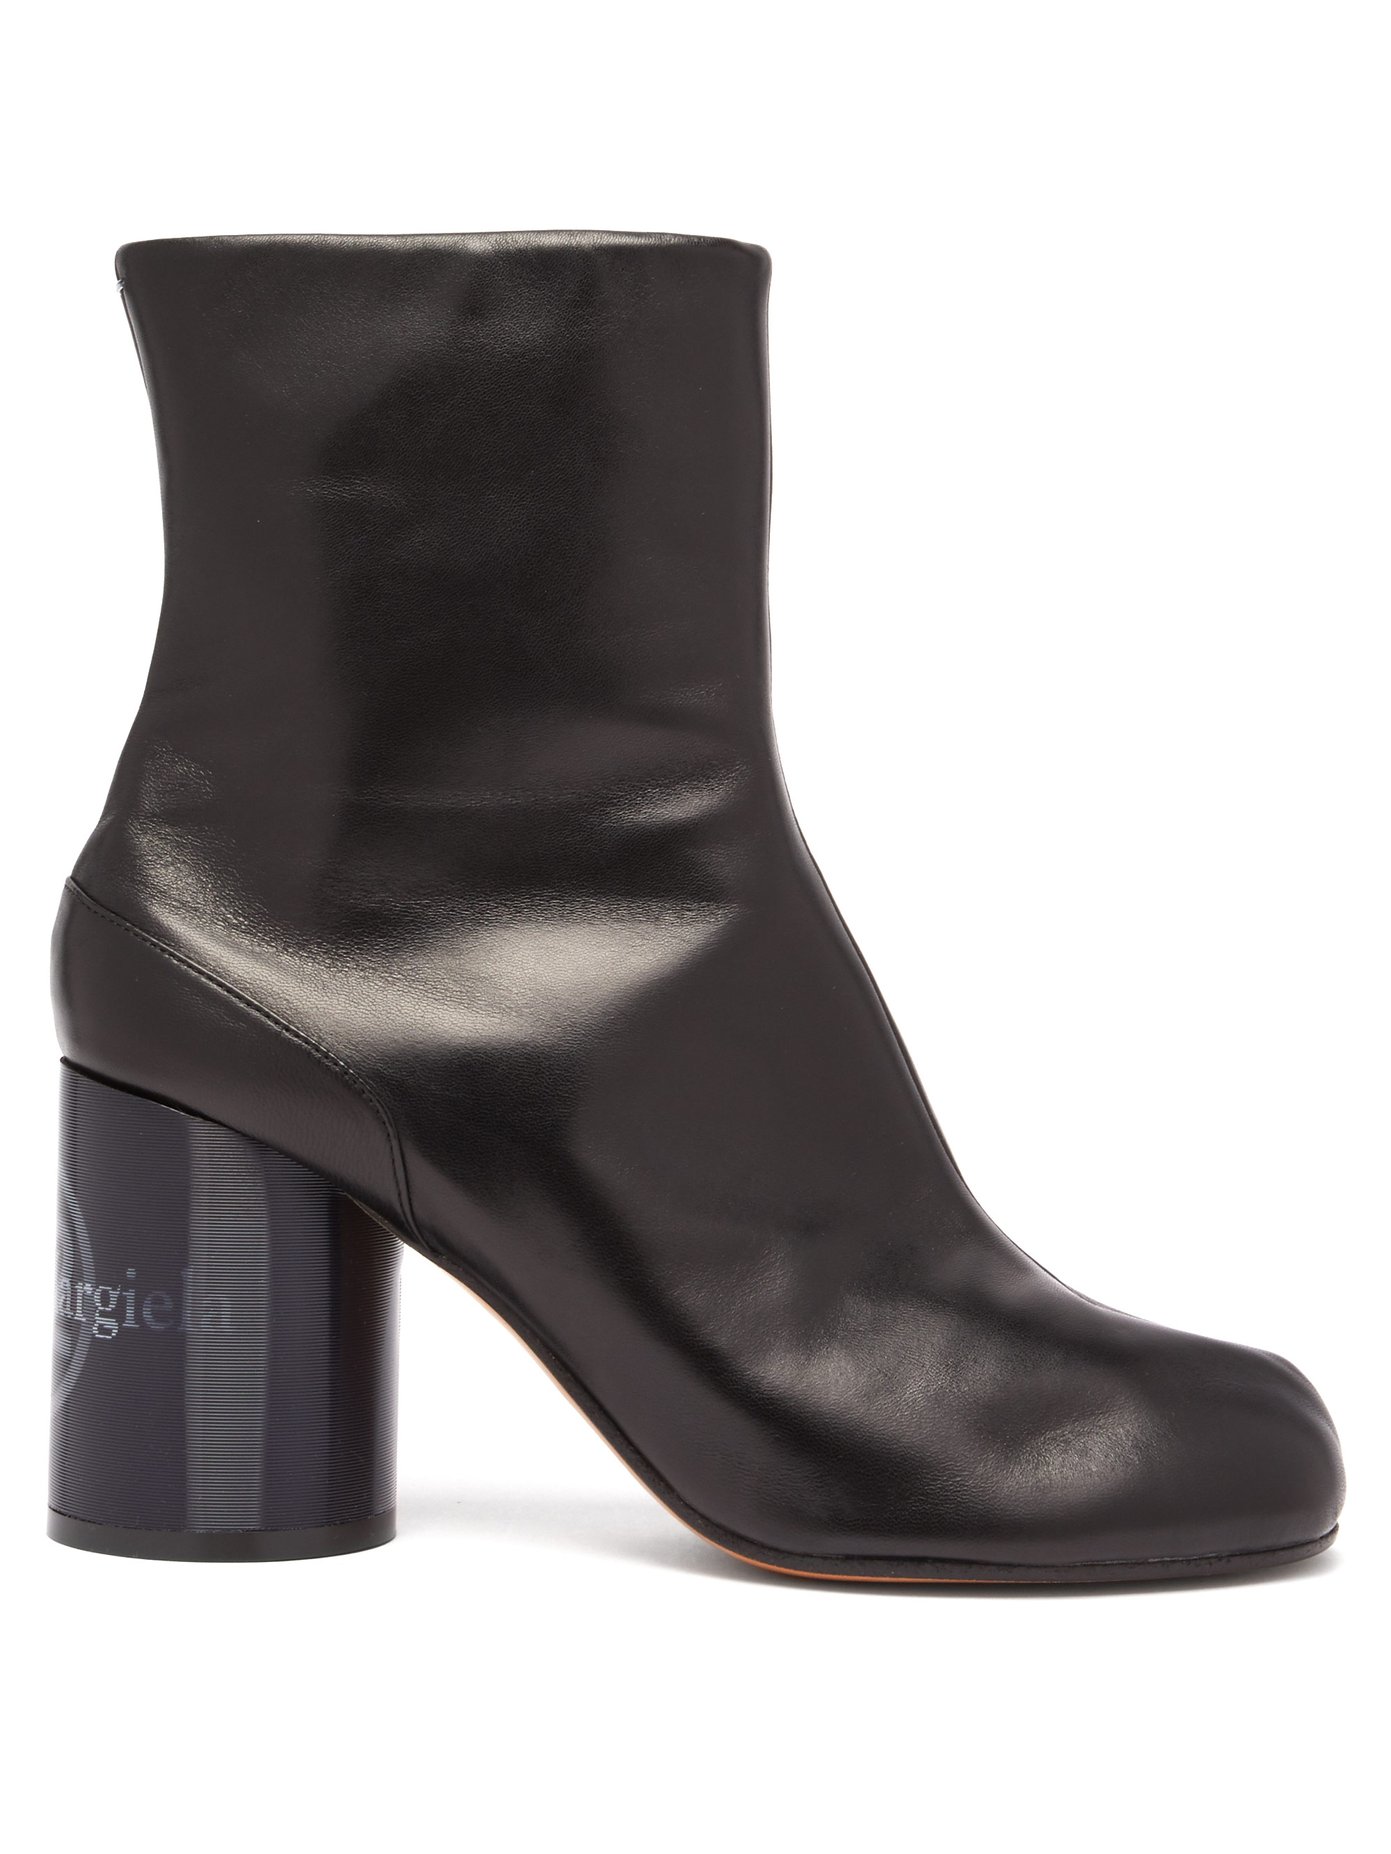 tabi heeled boots